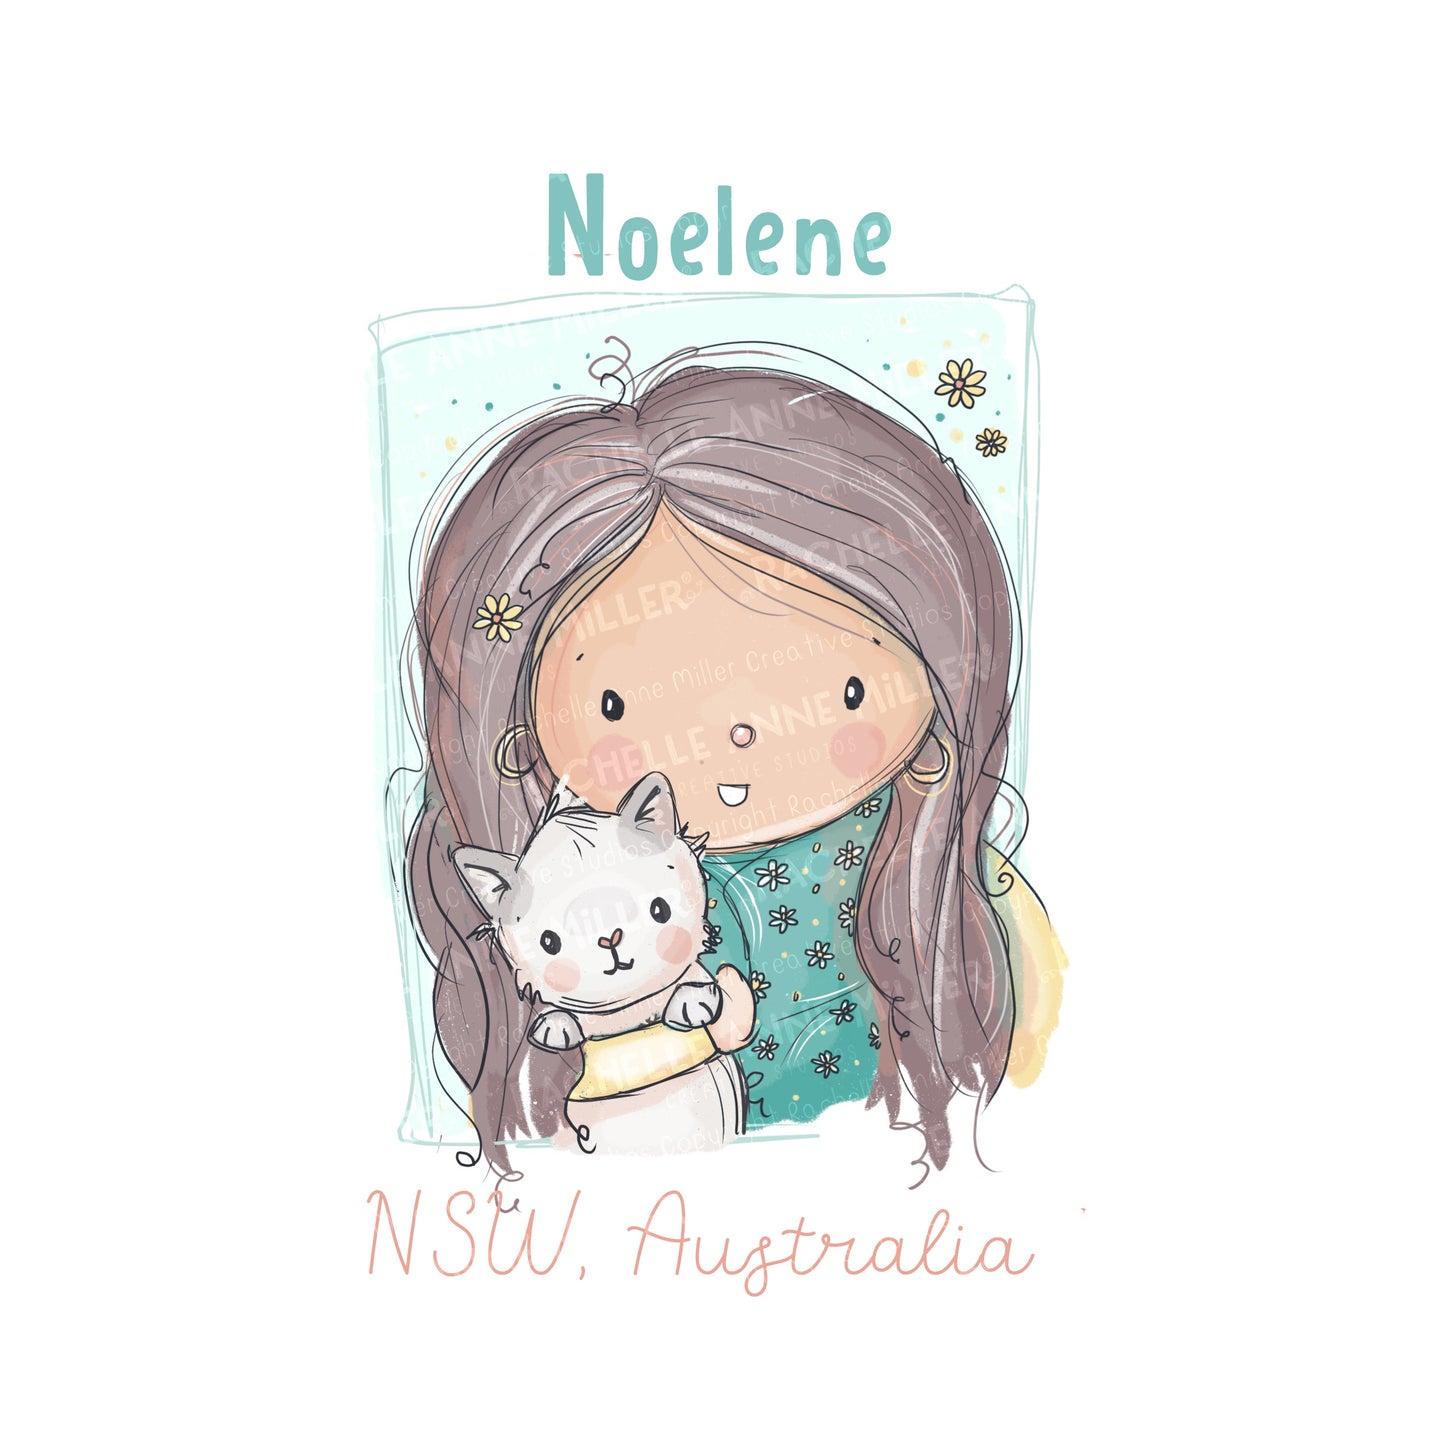 'Noelene's Kitty' Profile Digital Stamp